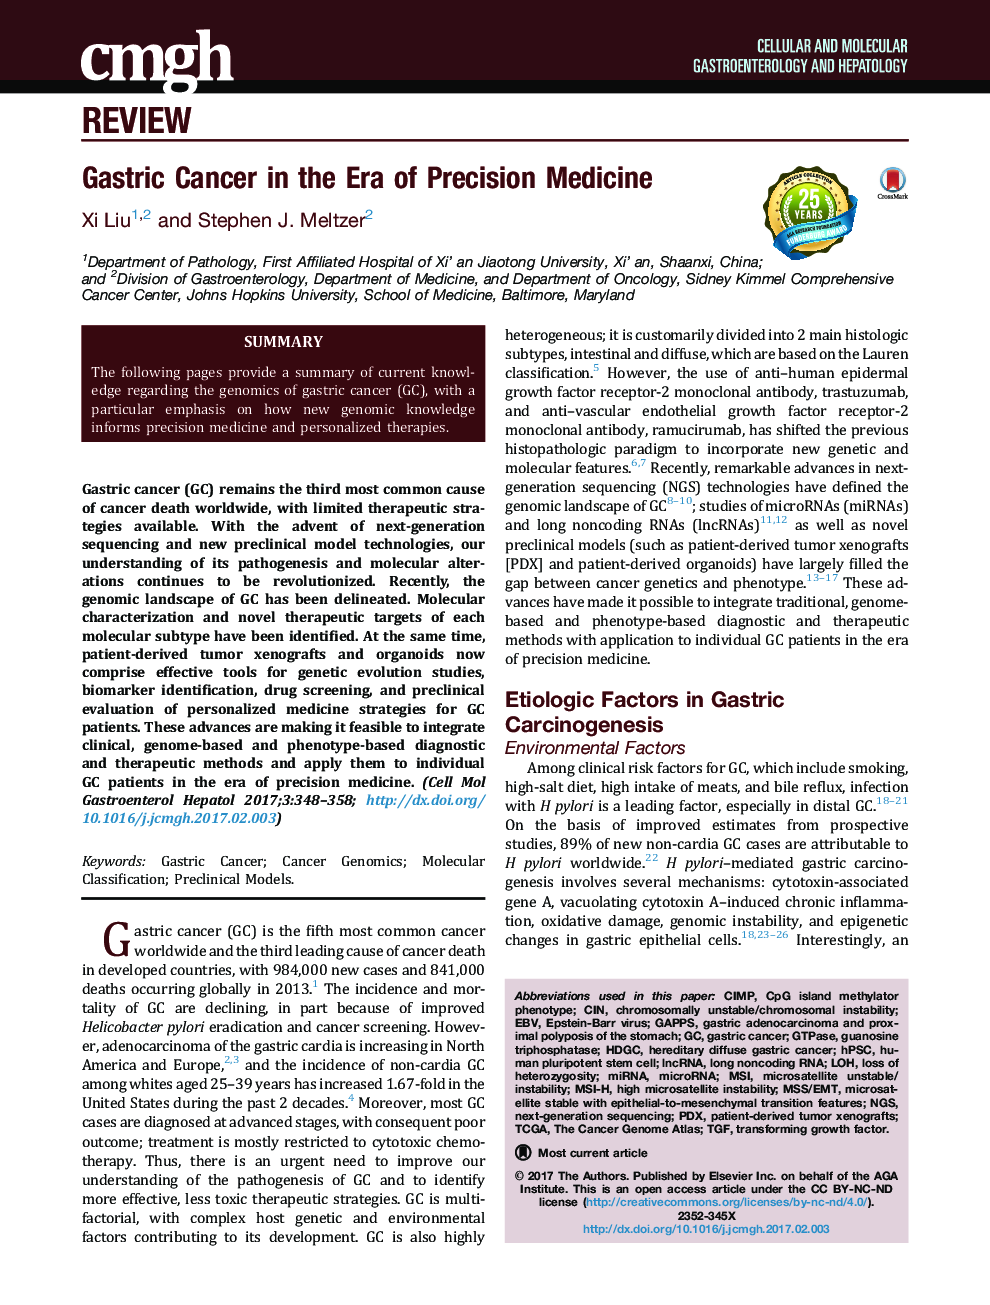 Gastric Cancer in the Era of Precision Medicine